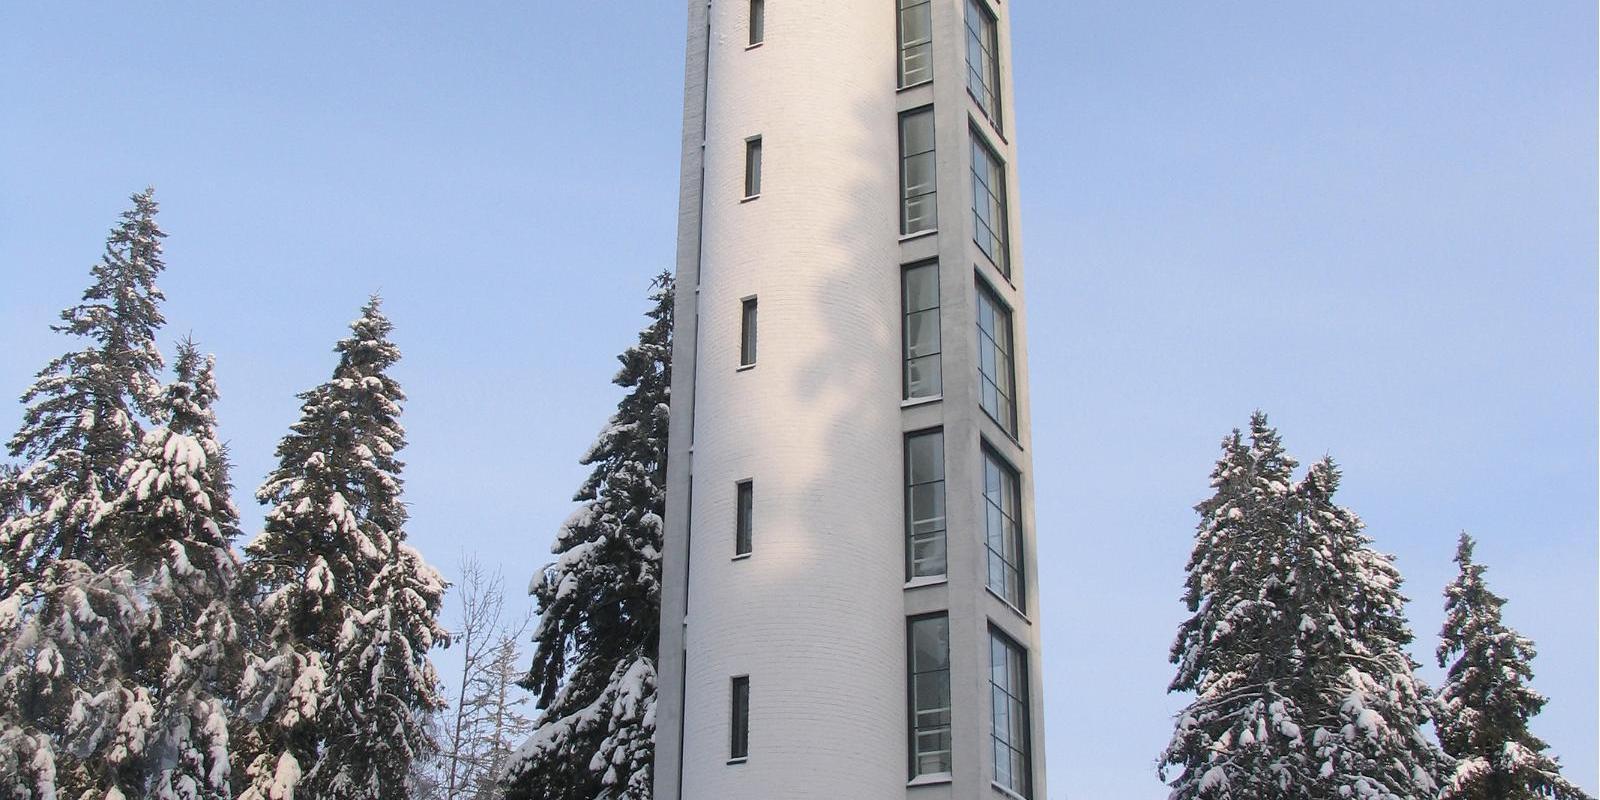 Observation tower on Suur Munamägi